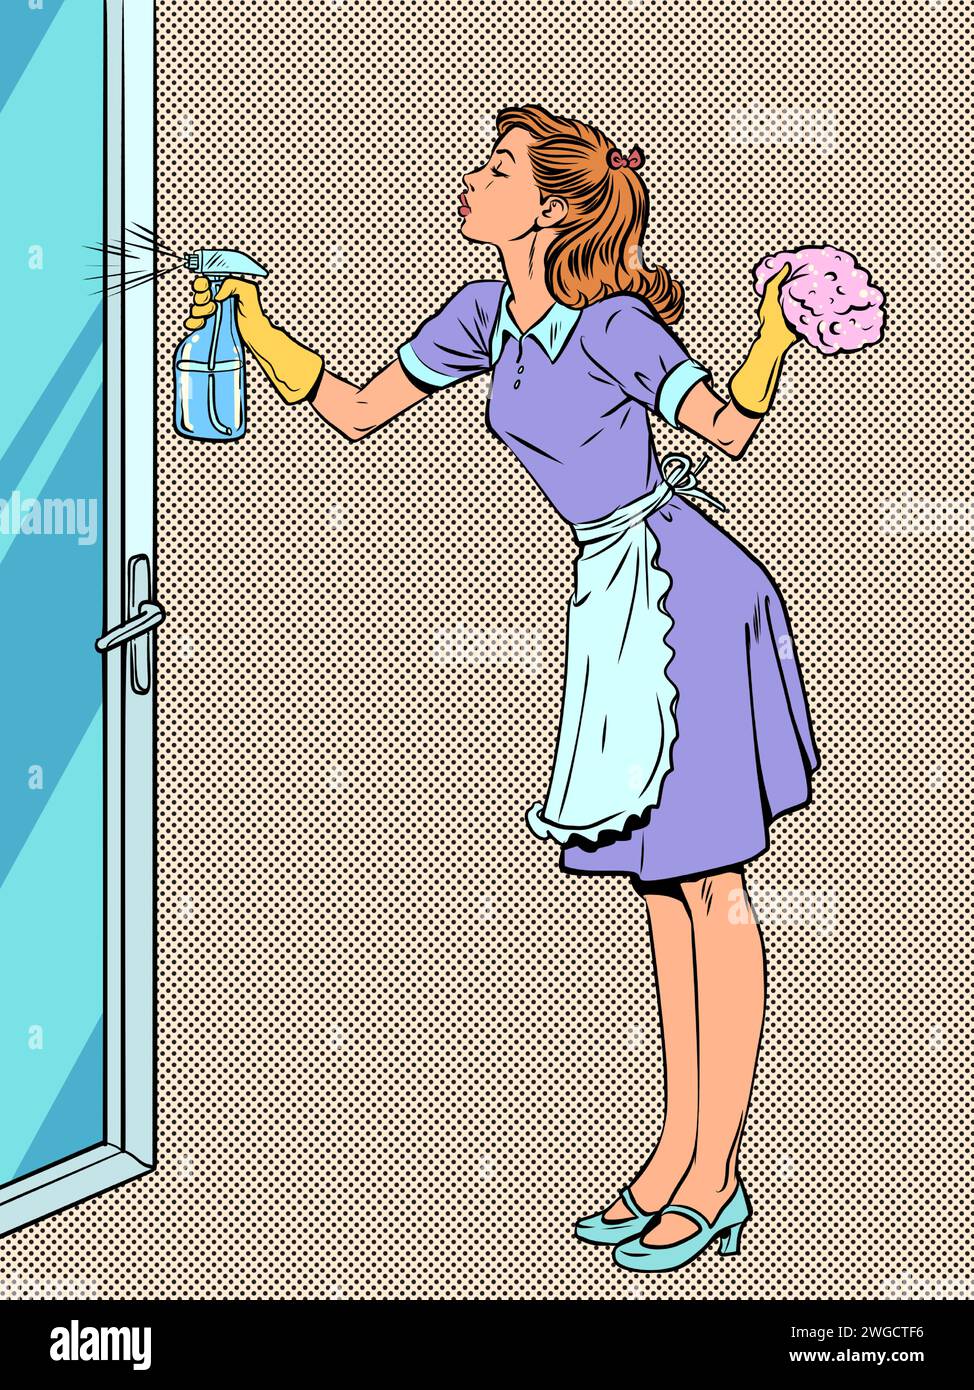 Servizio di pulizia per la pulizia della casa. La casalinga responsabile sta pulendo la casa. Una ragazza in uniforme lava una porta di vetro. Fumetti pop art ret Illustrazione Vettoriale